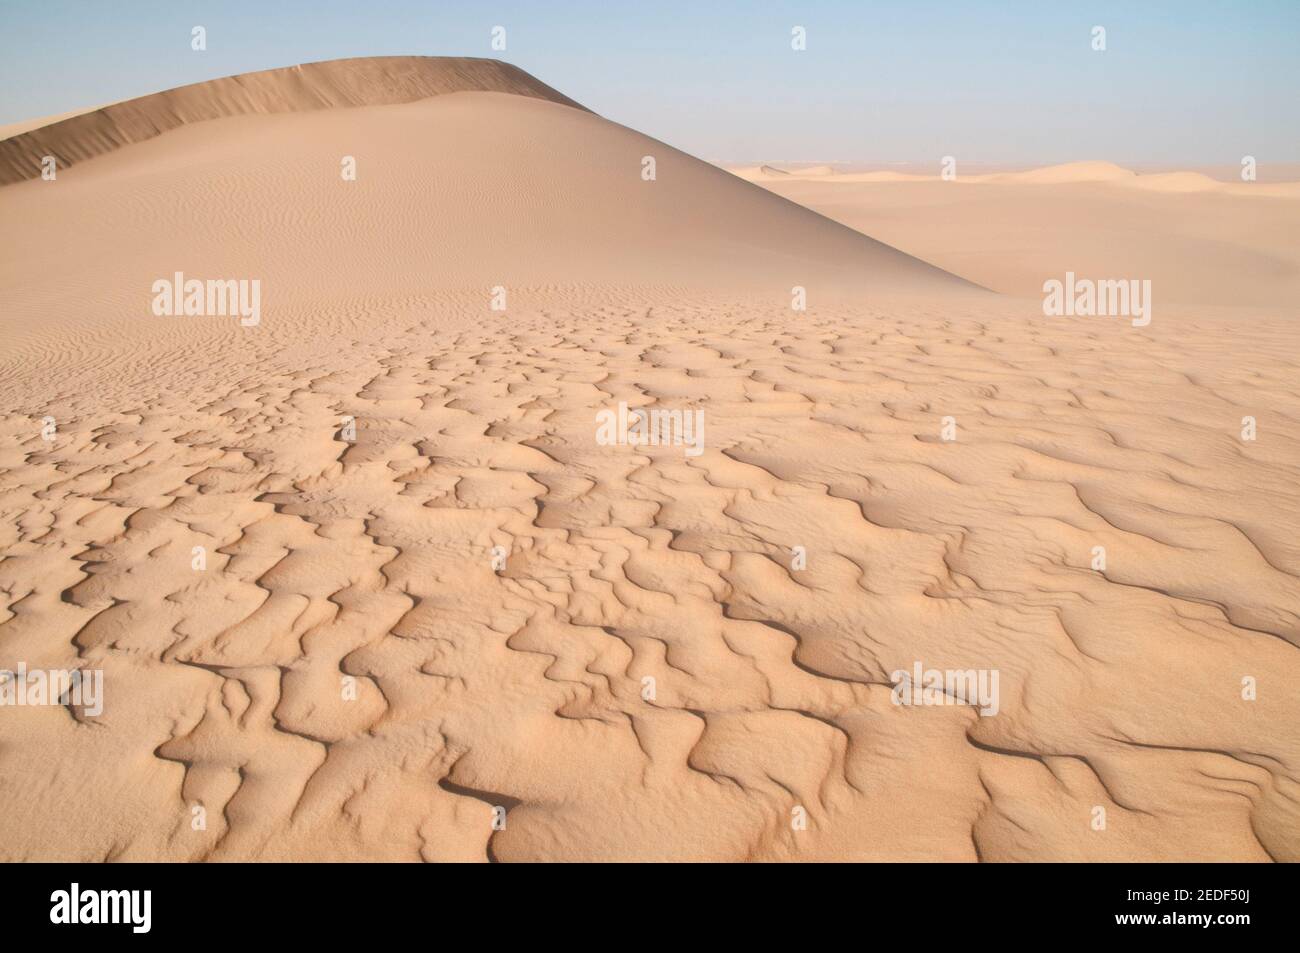 Eine riesige whaleback-Sanddüne, die sich über das große Sandmeer erstreckt, in der westlichen Wüstenregion der Sahara in Ägypten. Stockfoto